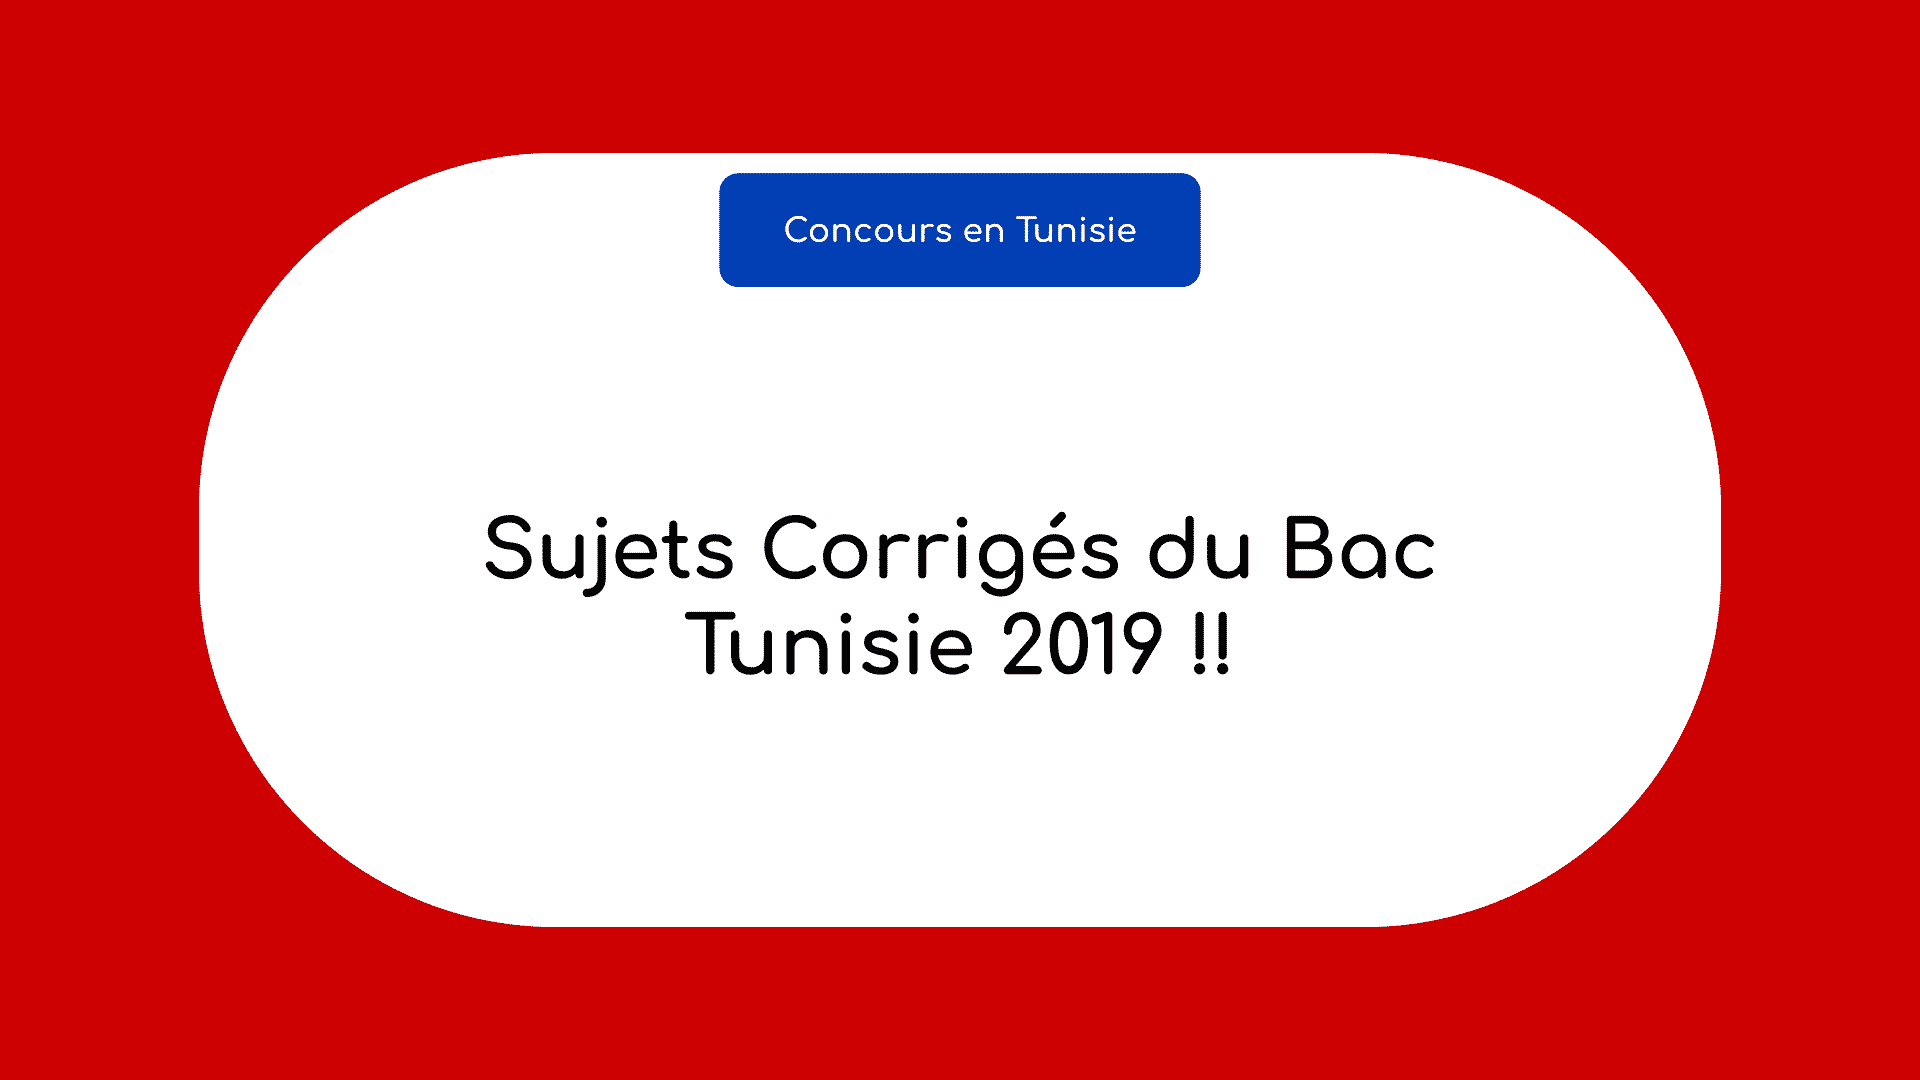 Bac Tunisie 2019